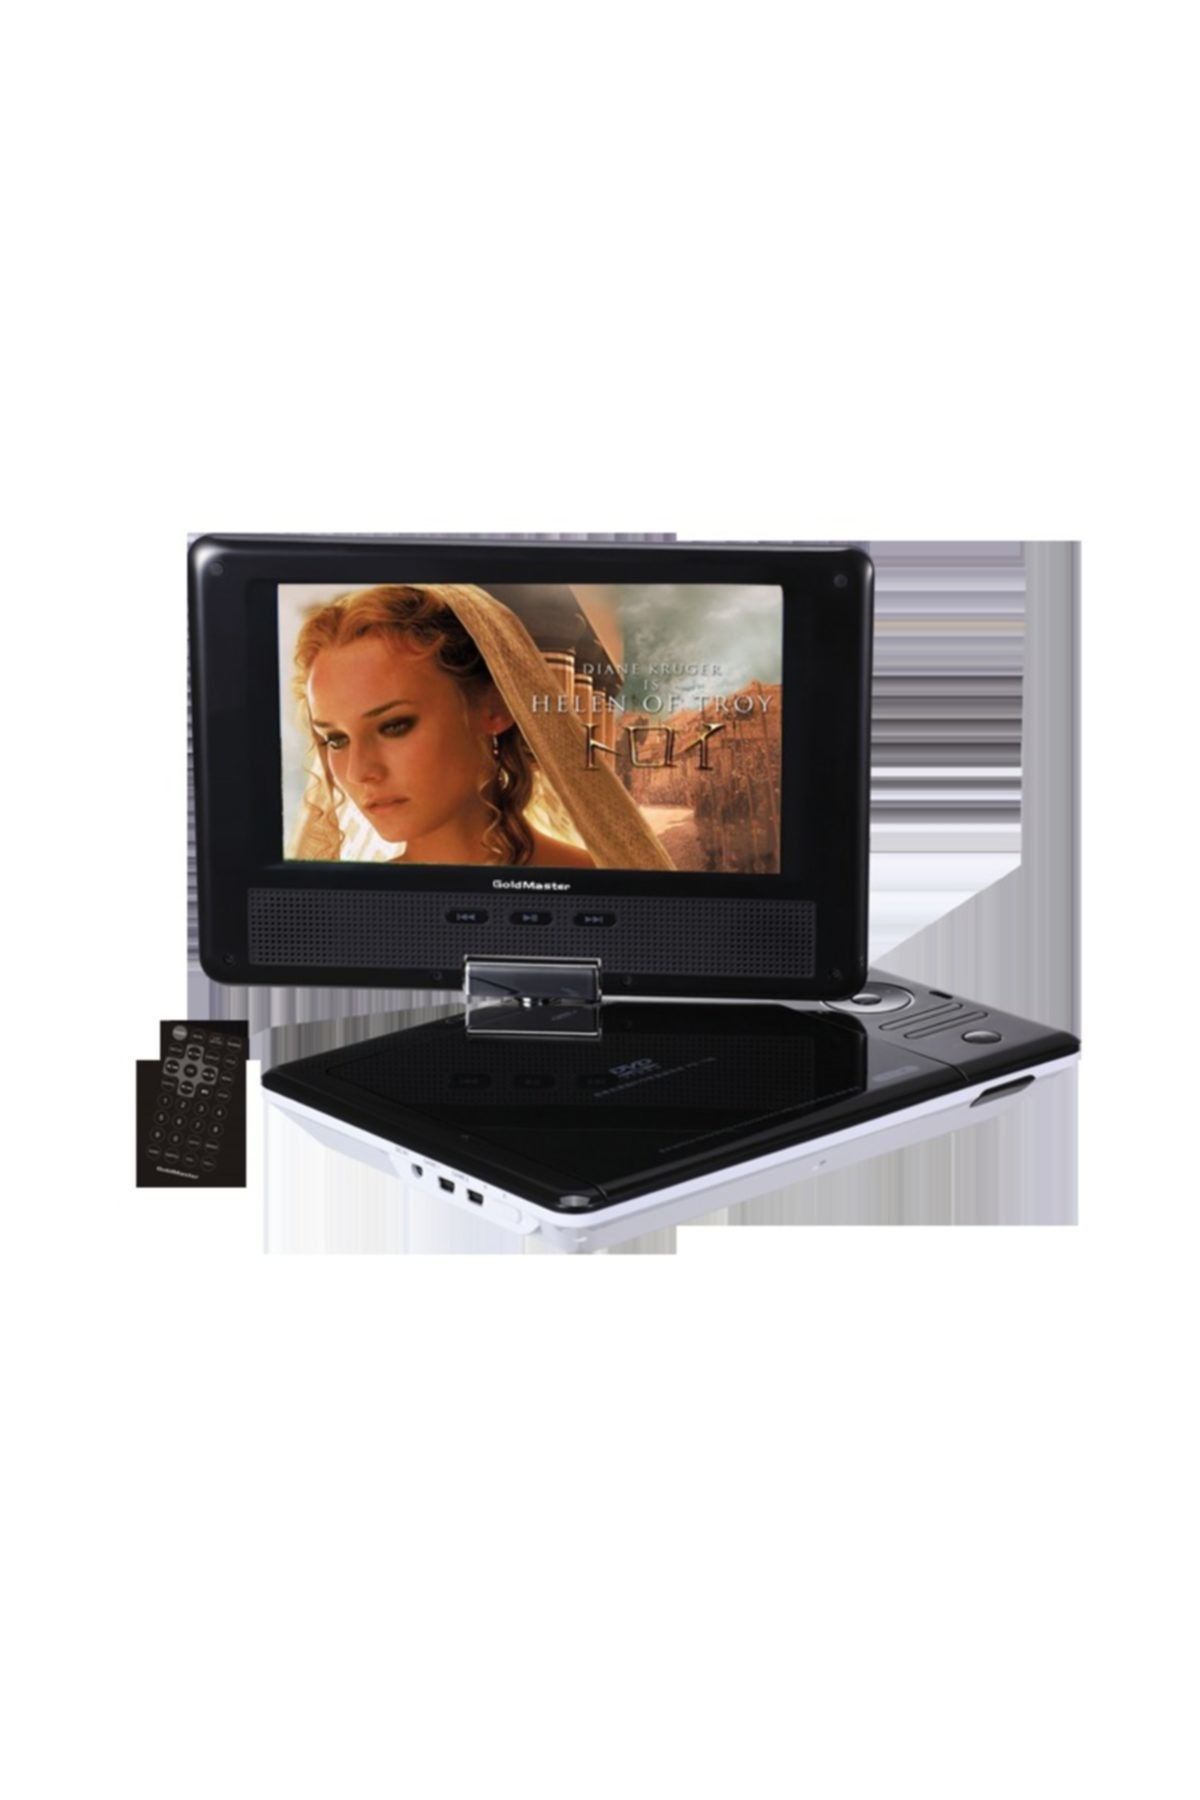 GoldMaster PD-700 Portable DVD Oynatıcı (BEYAZ)